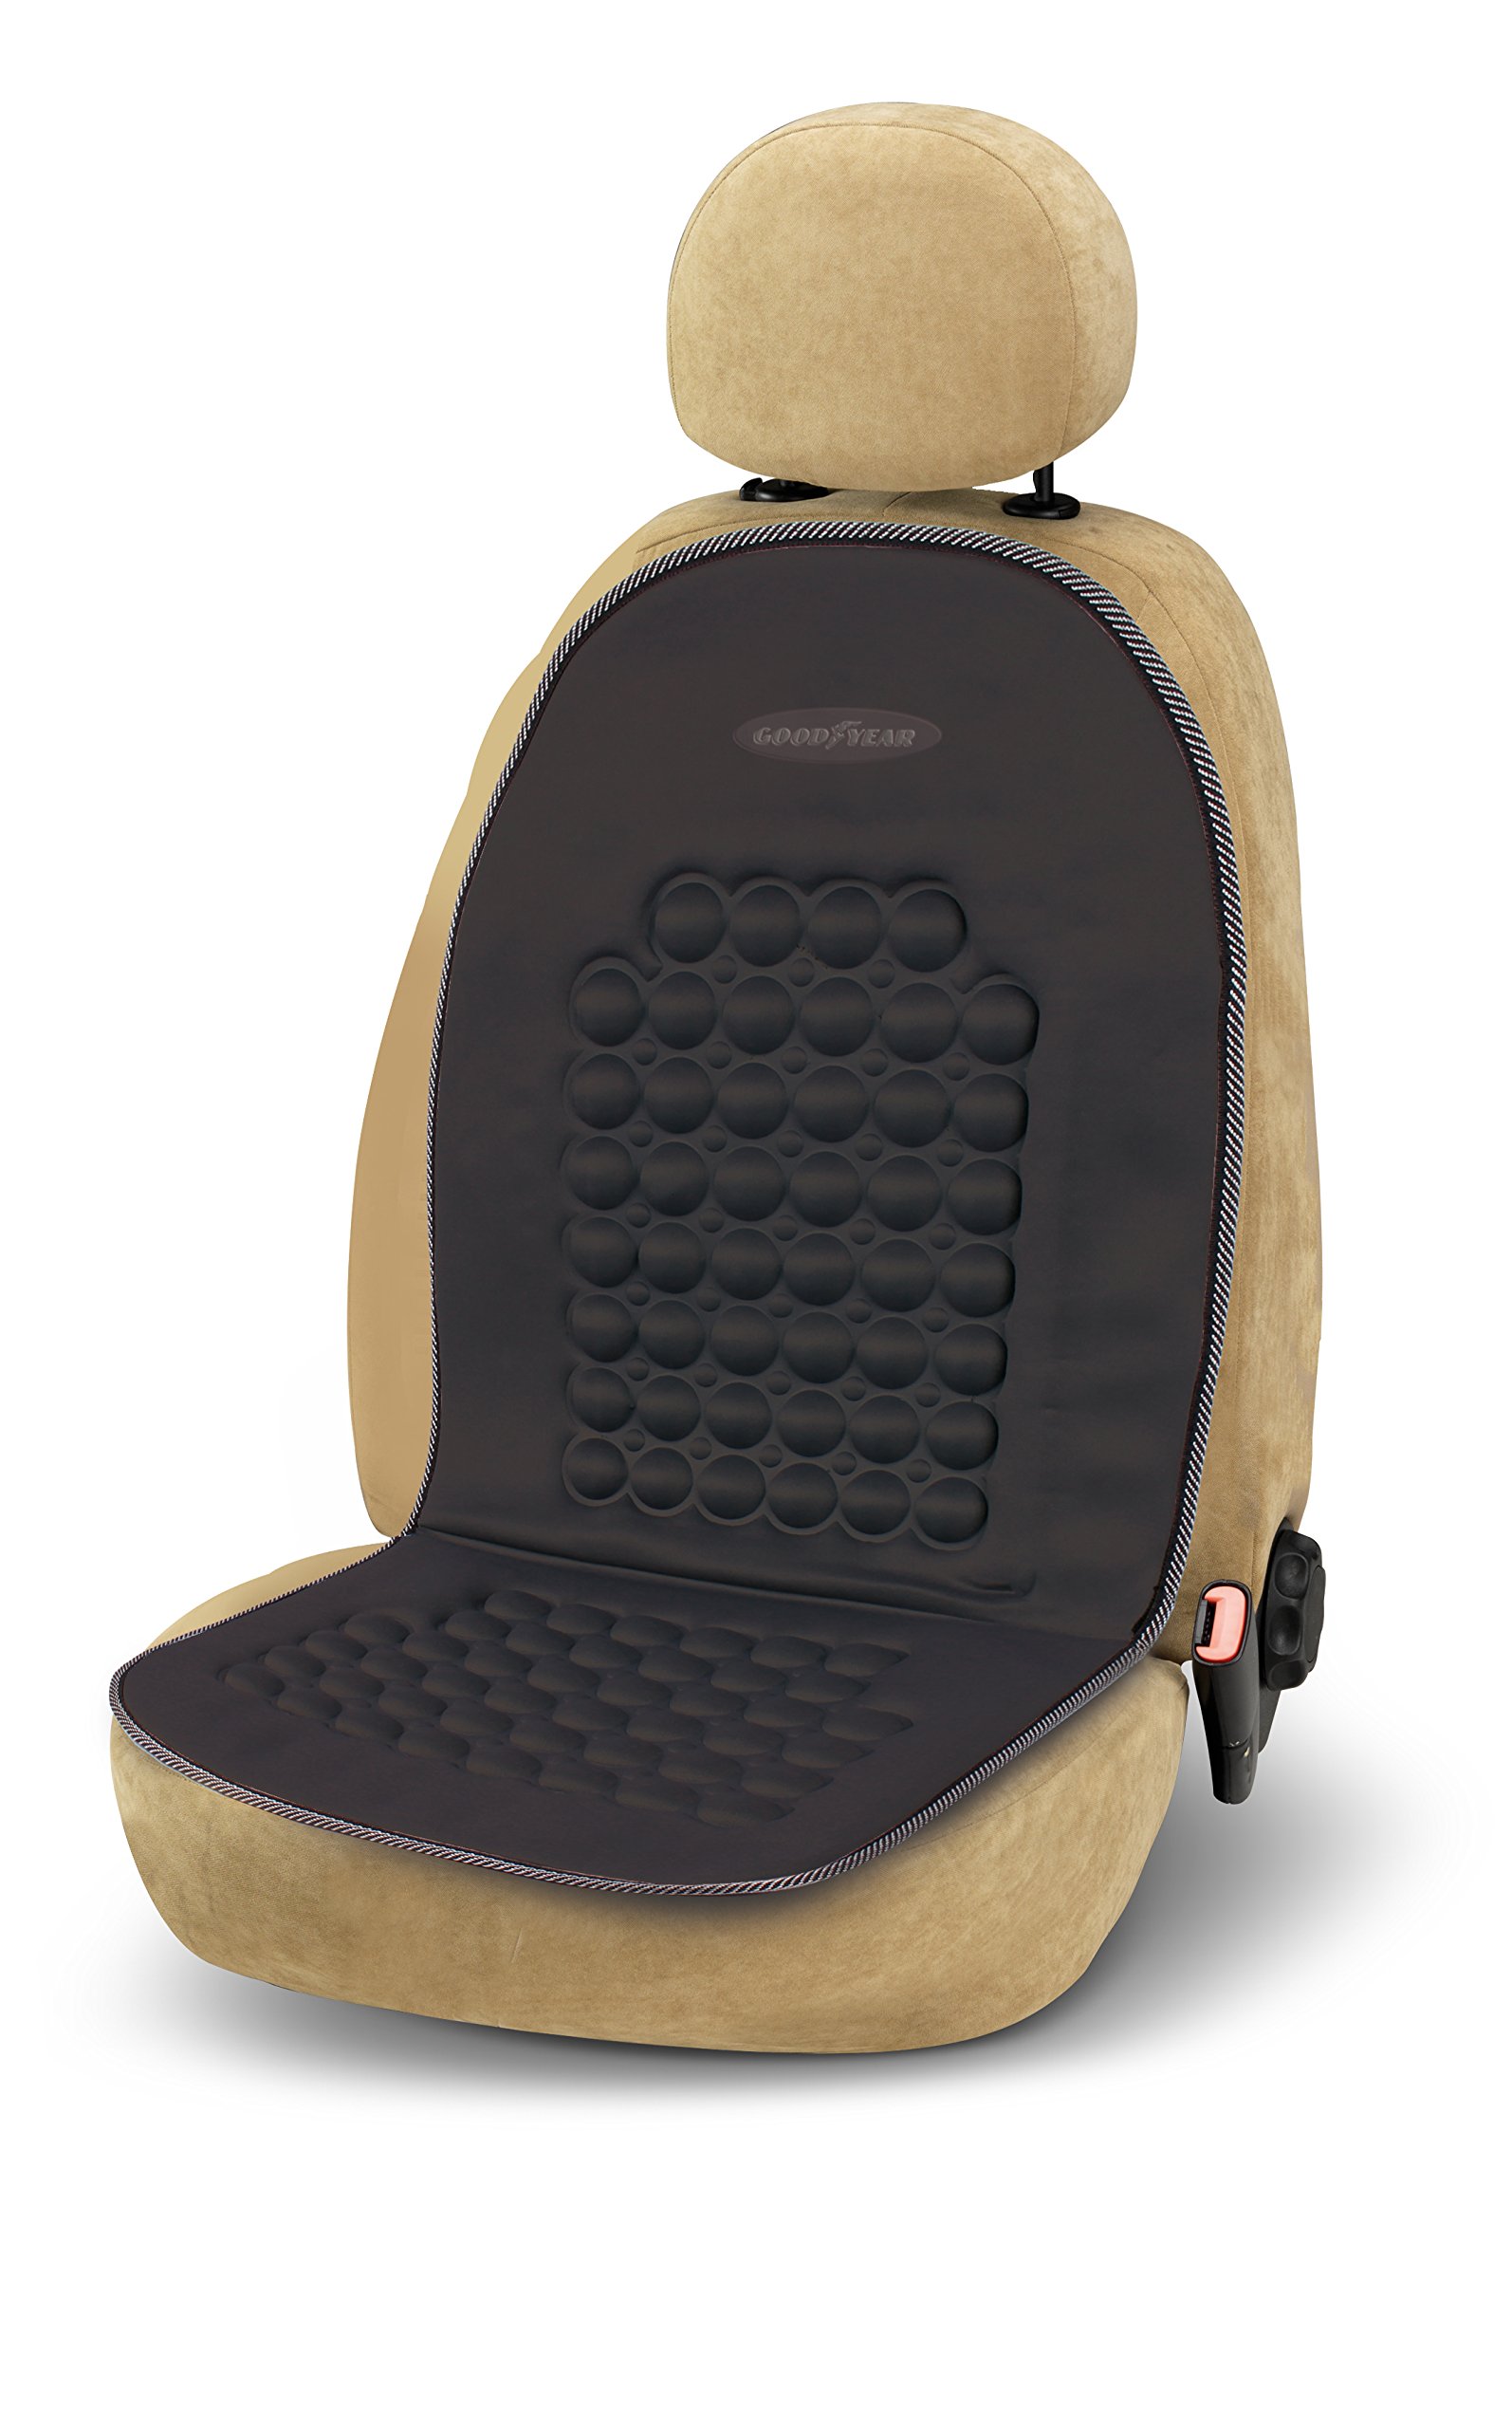 Goodyear 77129 77129: Sitzauflage fürs Auto mit Massagefunktion Magnete und Unterstützung für den Rücken und die Seiten. Schwarz von Goodyear